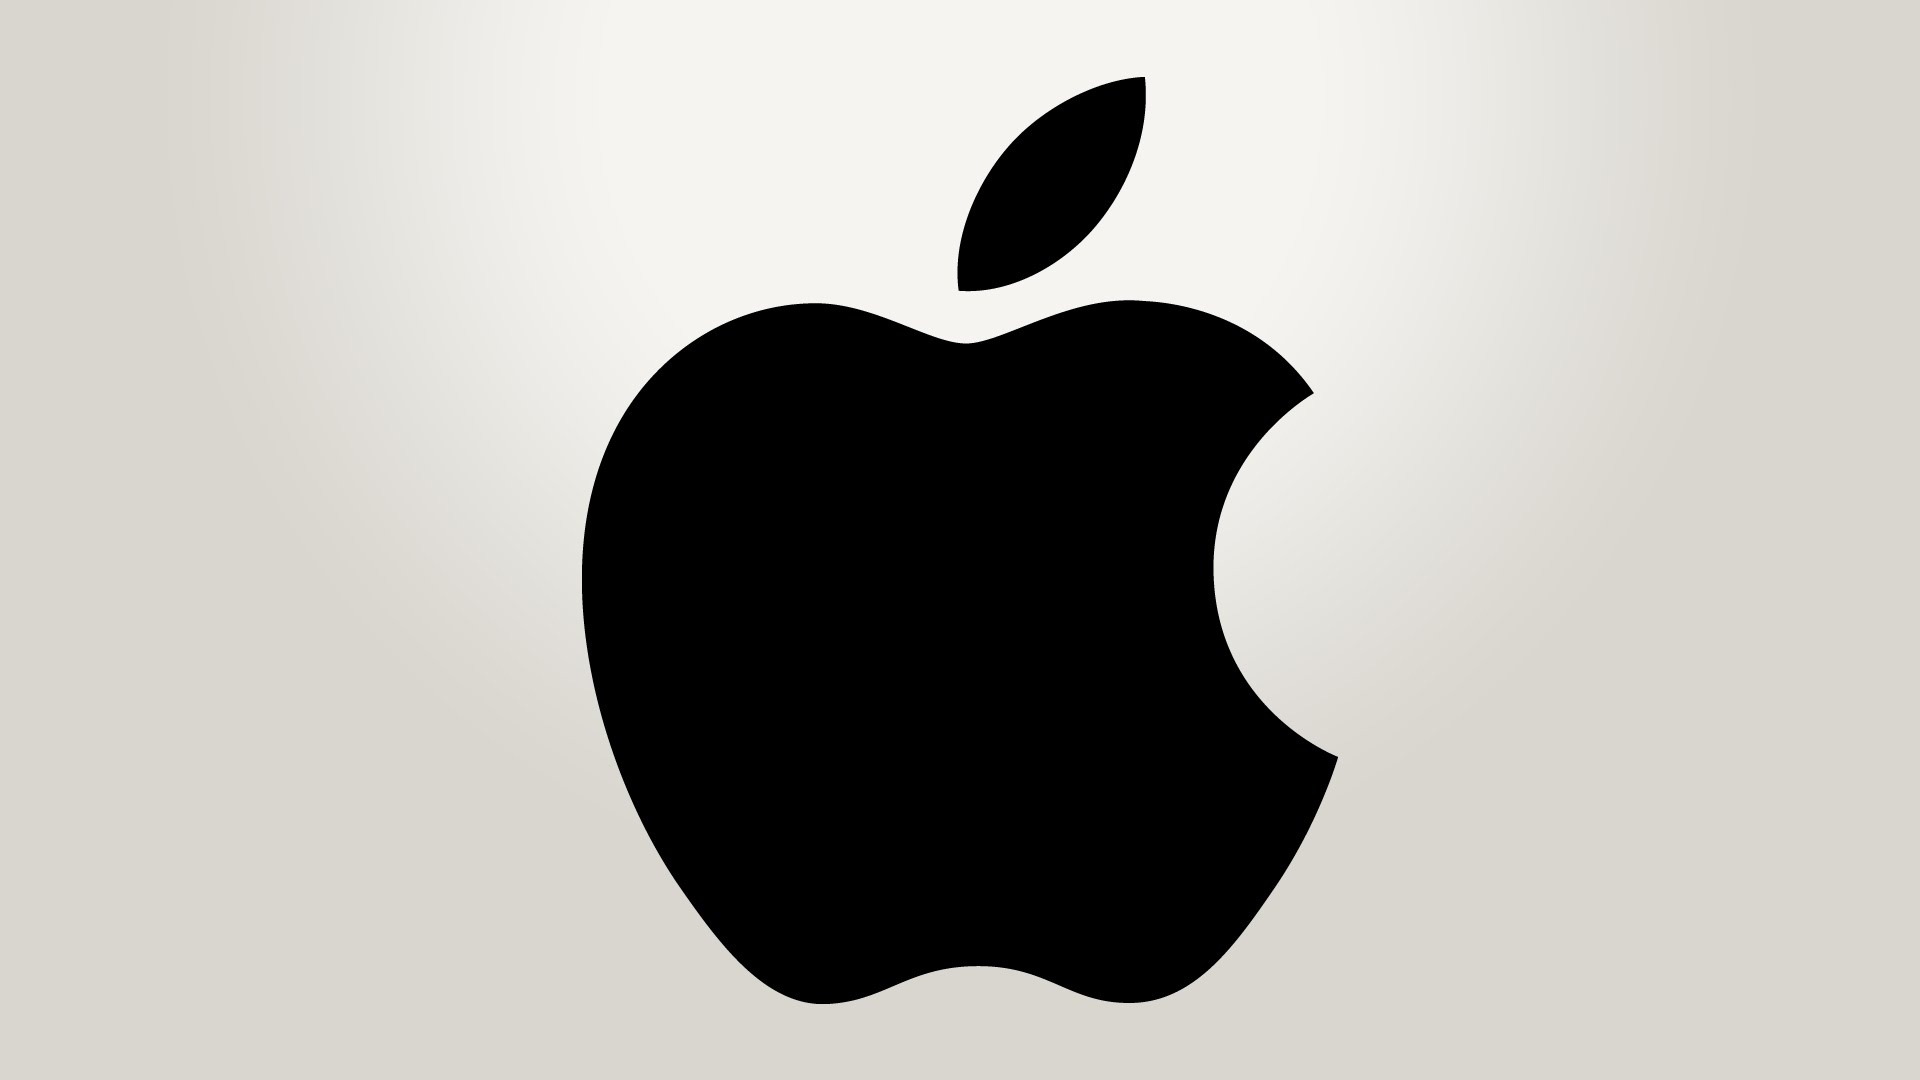 Zmieniona procedury testowe Apple maj sprawi, e ich kolejny iOS bdzie lepiej dopracowany